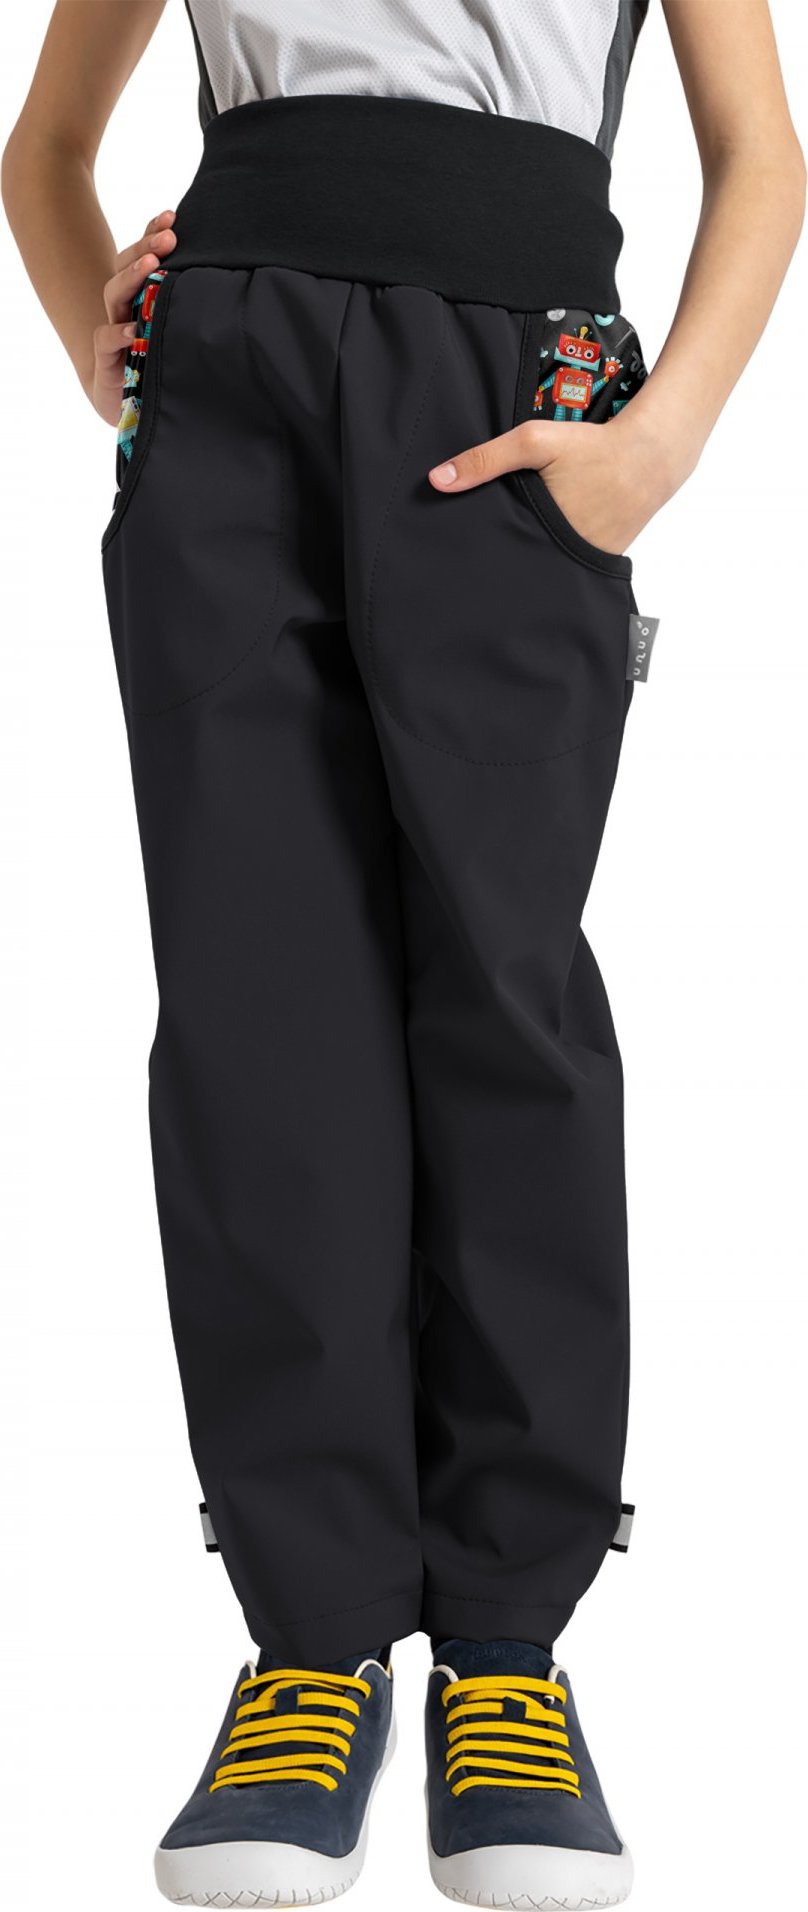 Dětské softshellové kalhoty UNUO Basic s fleecem, černé, Roboti Velikost: 98/104